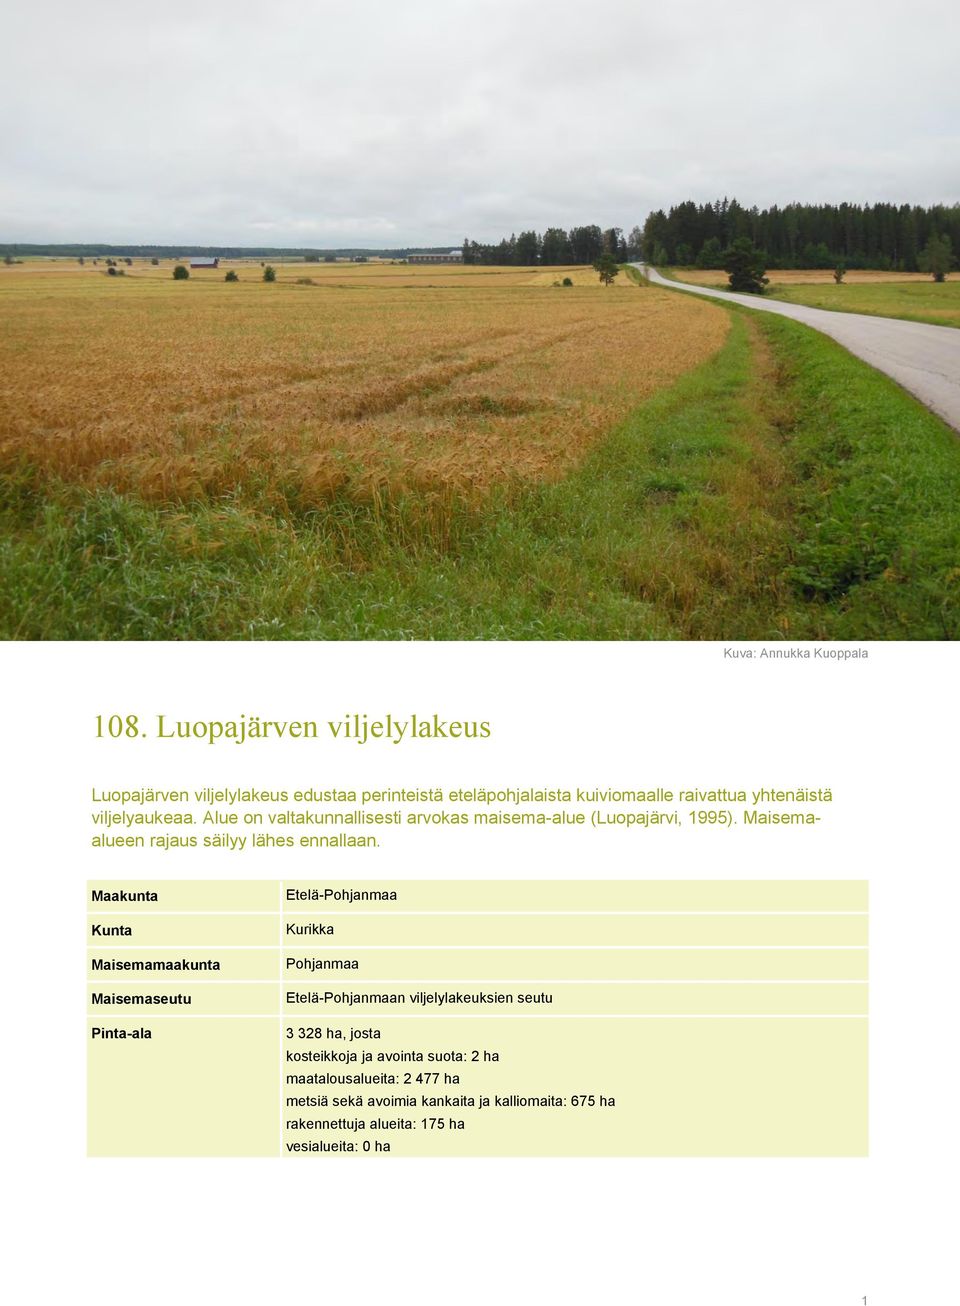 Alue on valtakunnallisesti arvokas maisema-alue (Luopajärvi, 1995). Maisemaalueen rajaus säilyy lähes ennallaan.